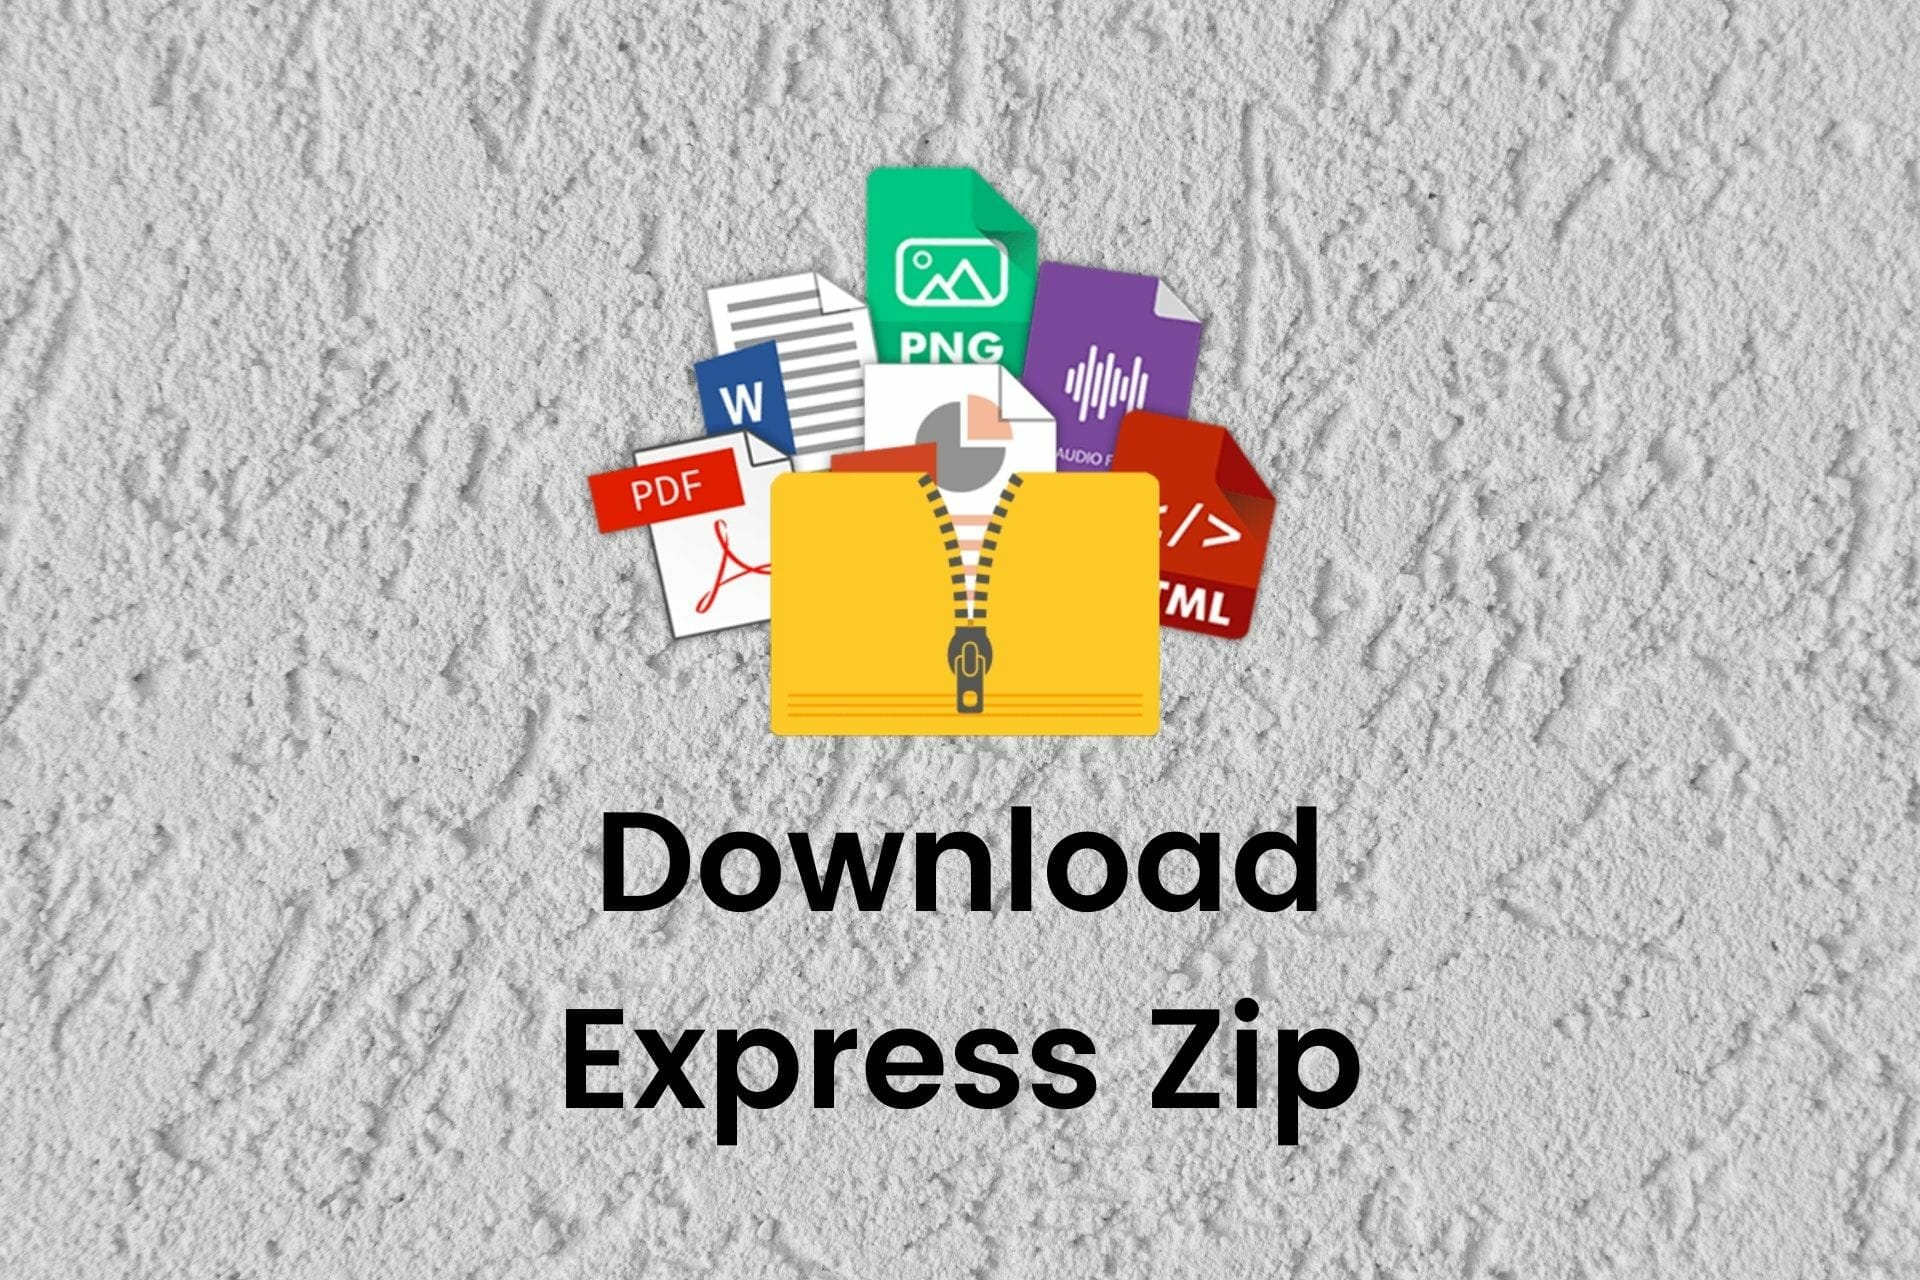 express zip free download windows 10